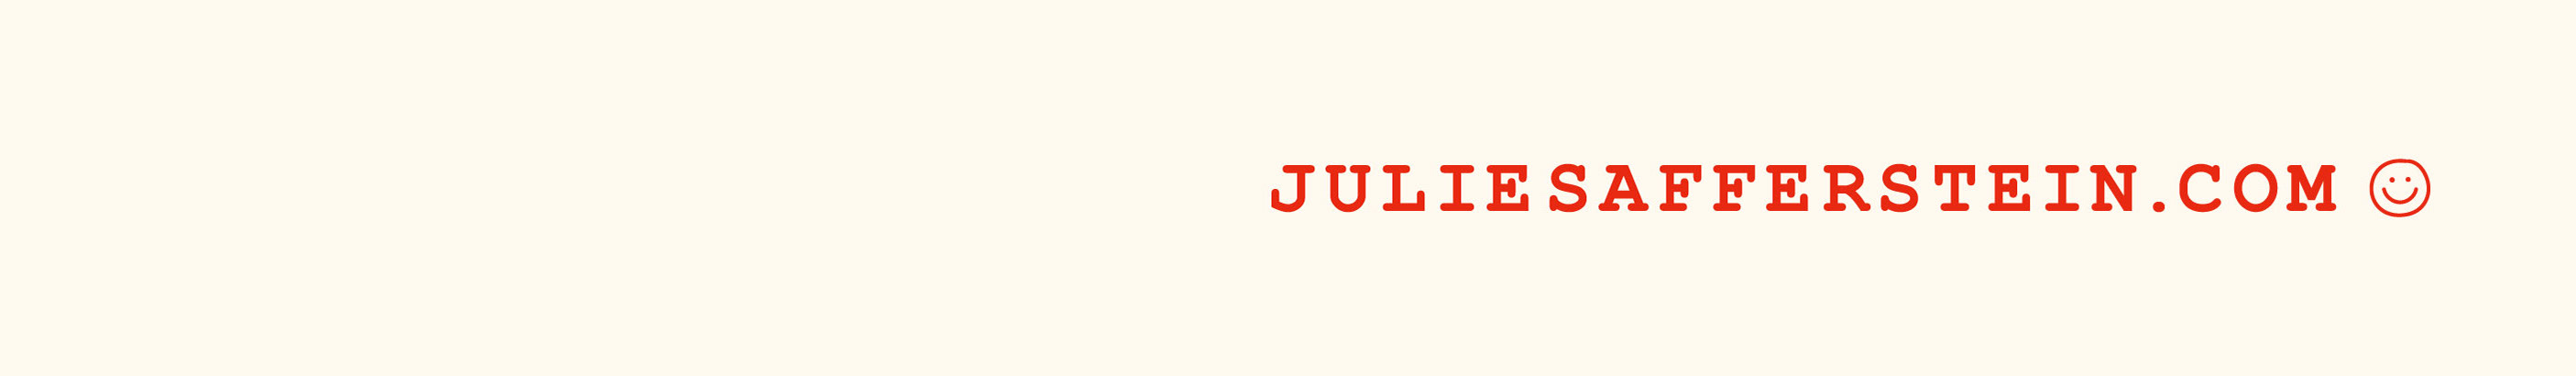 Julie Safferstein's profile banner